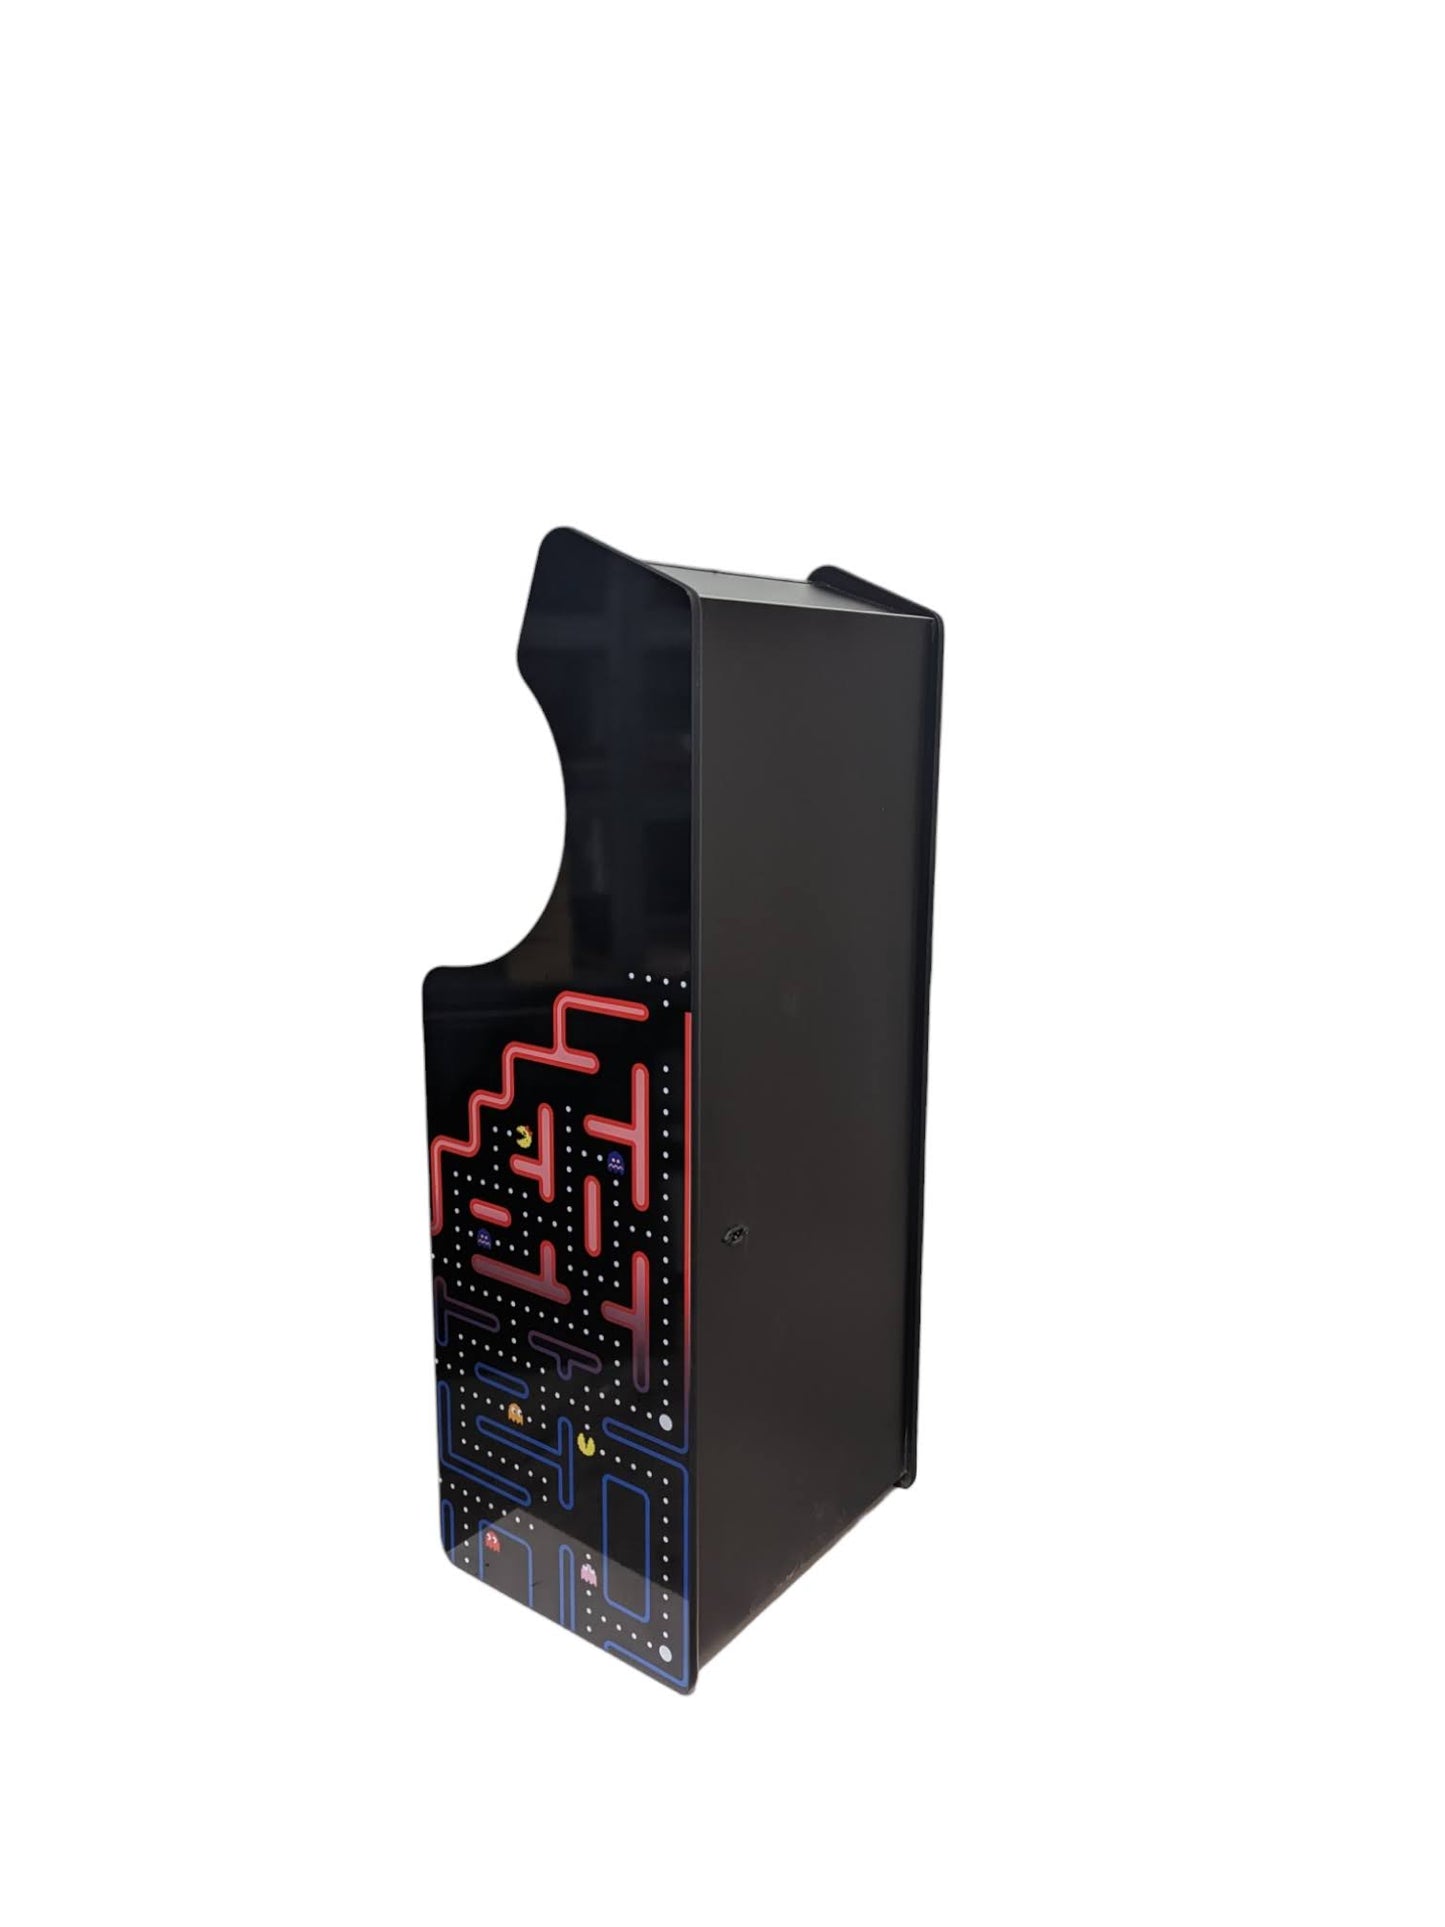 Deluxe 24 Arcade Machine - Pacman Dark Theme